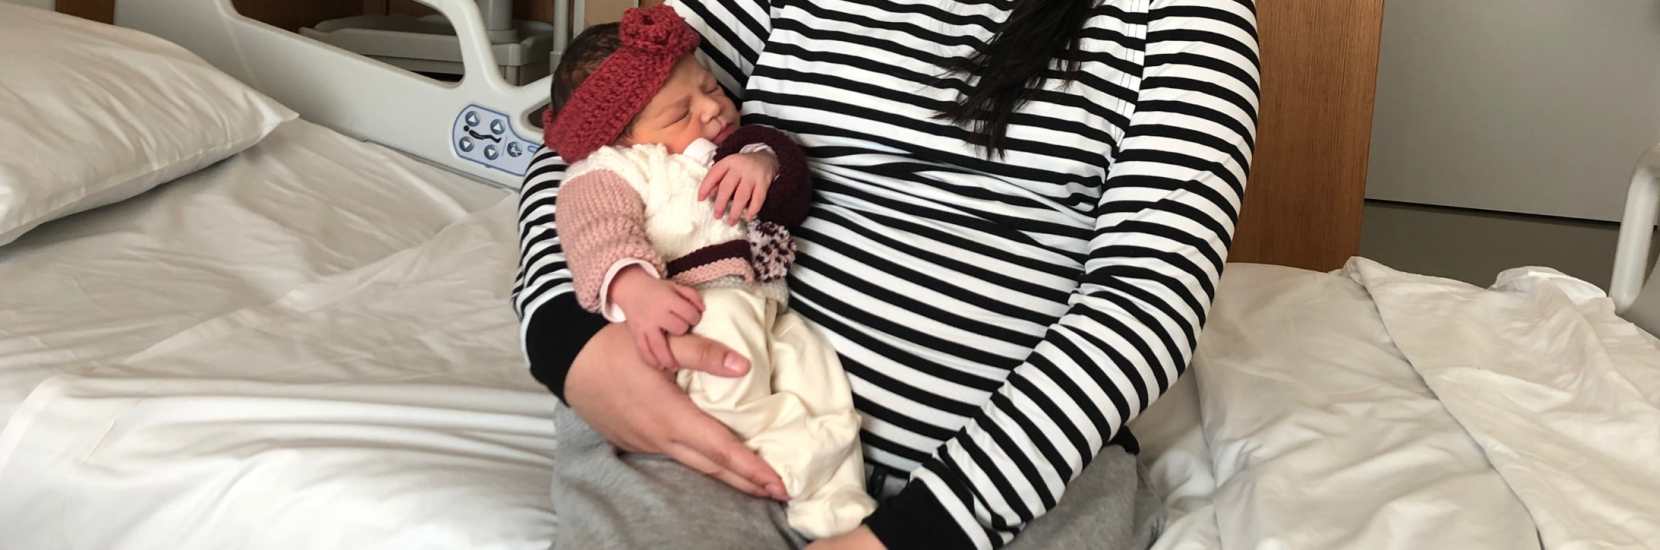 Nouveau record à la Maternité du CHL avec 3028 accouchements enregistrés en 2019